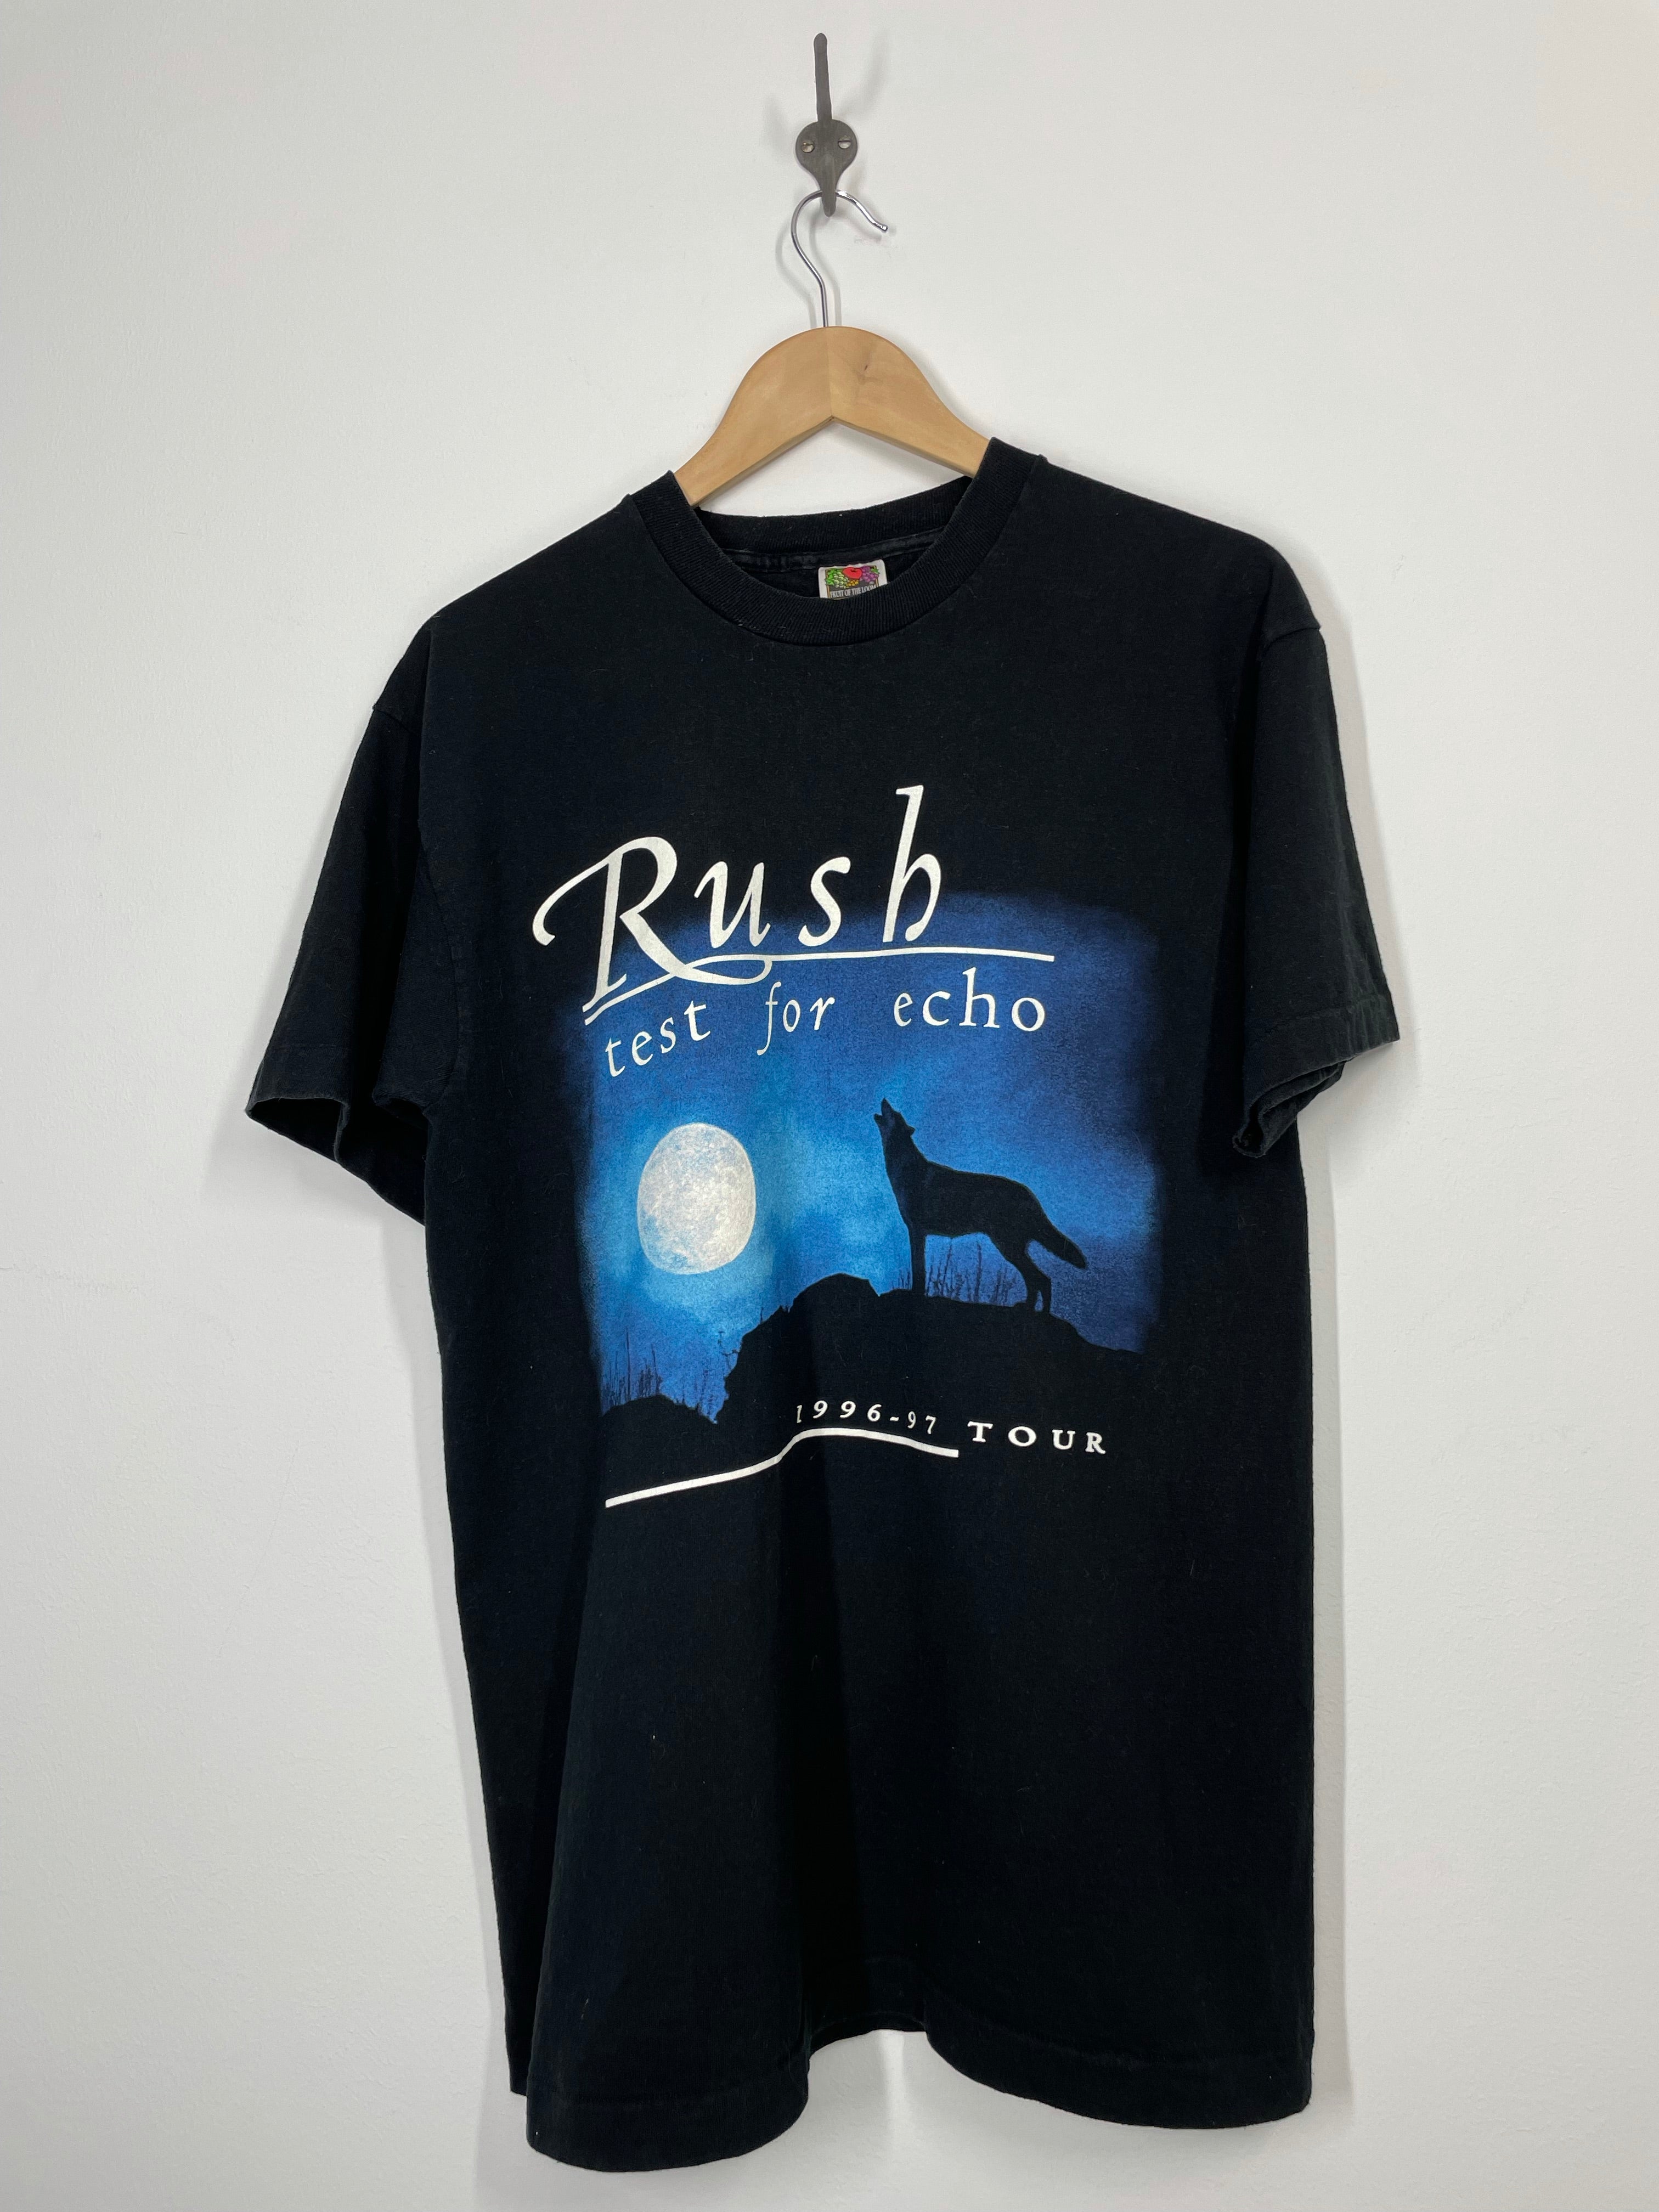 Rush Test for Echo 1996 - 1997 Tour Concert T Shirt - Heavy - L